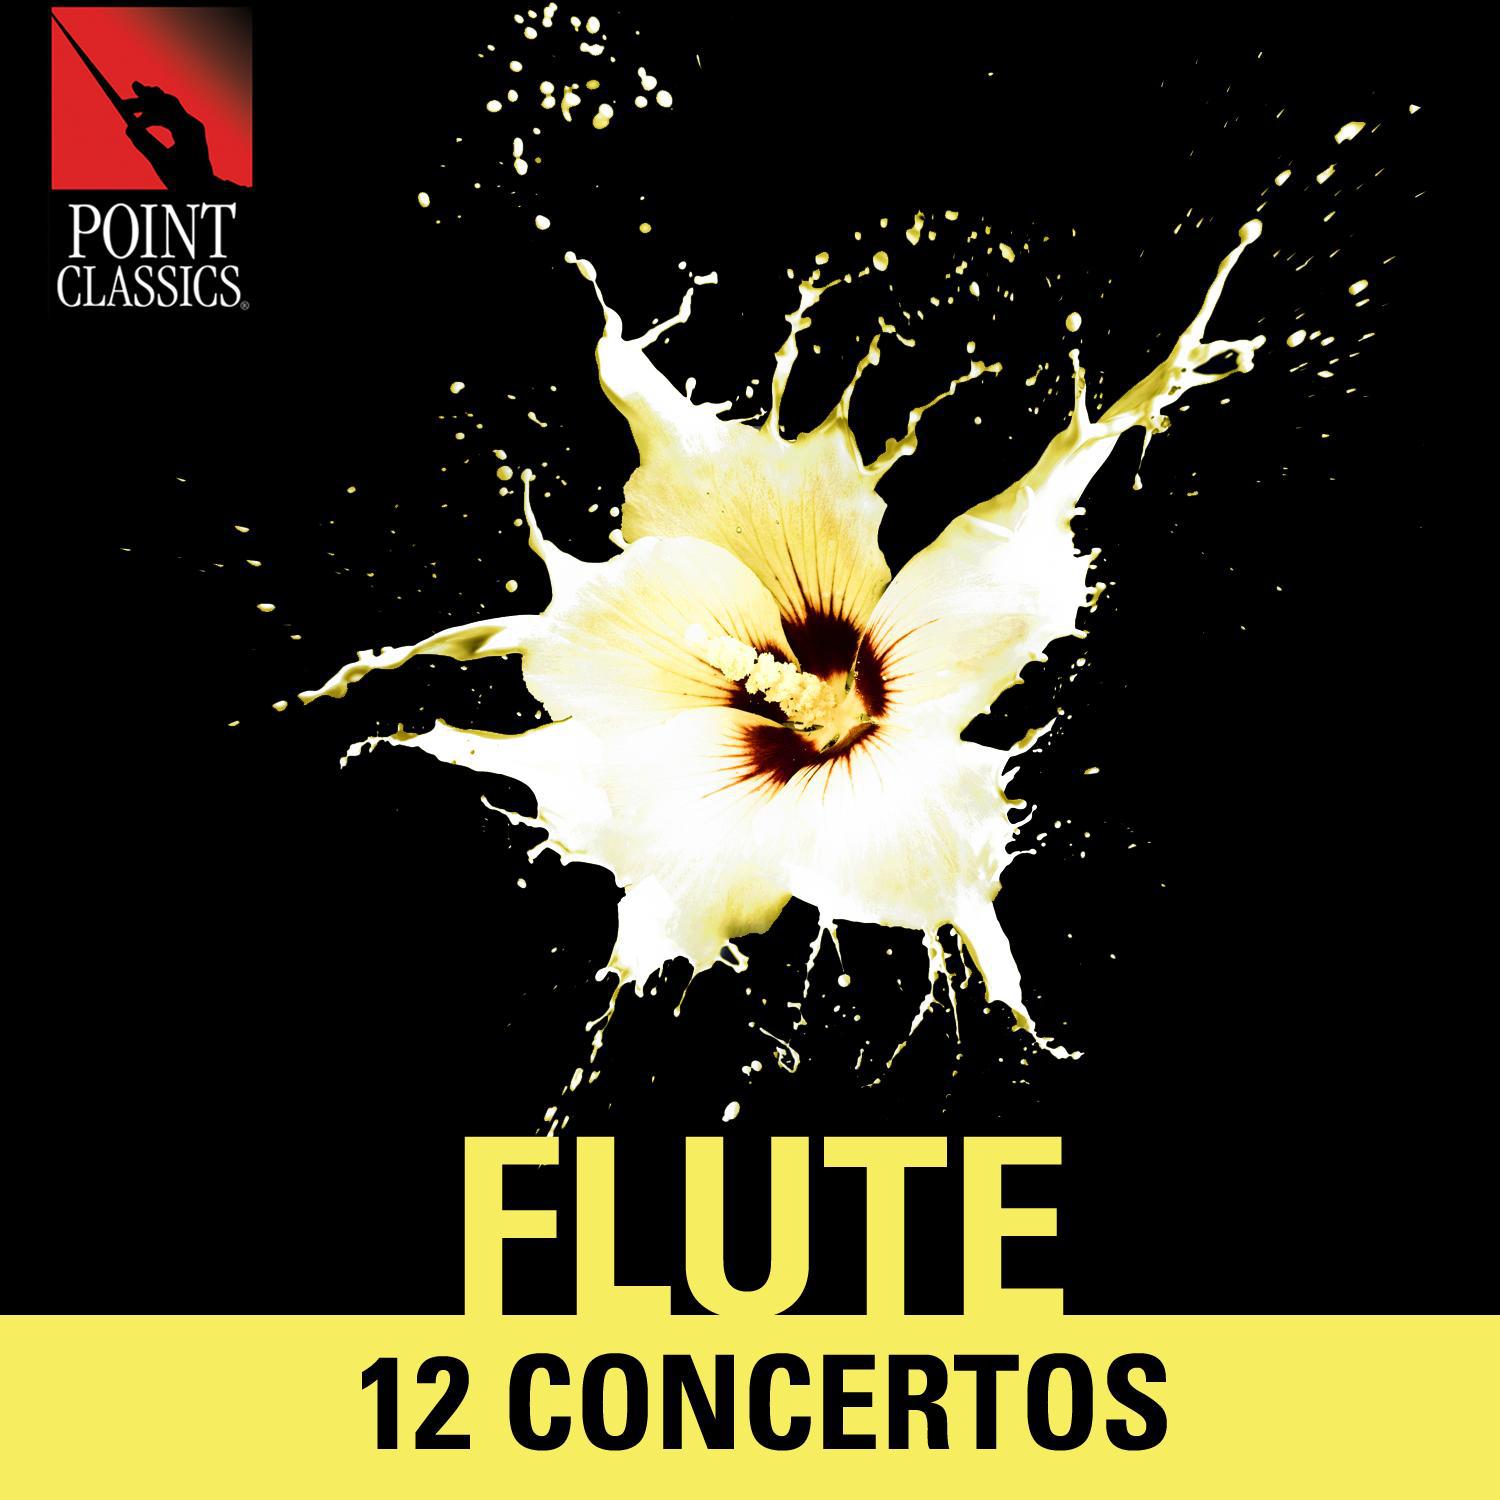 Euro Symphony Orchestra - Flute Concerto No. 1 in G Major, K. 313: III. Rondo. Tempo Di Minuetto